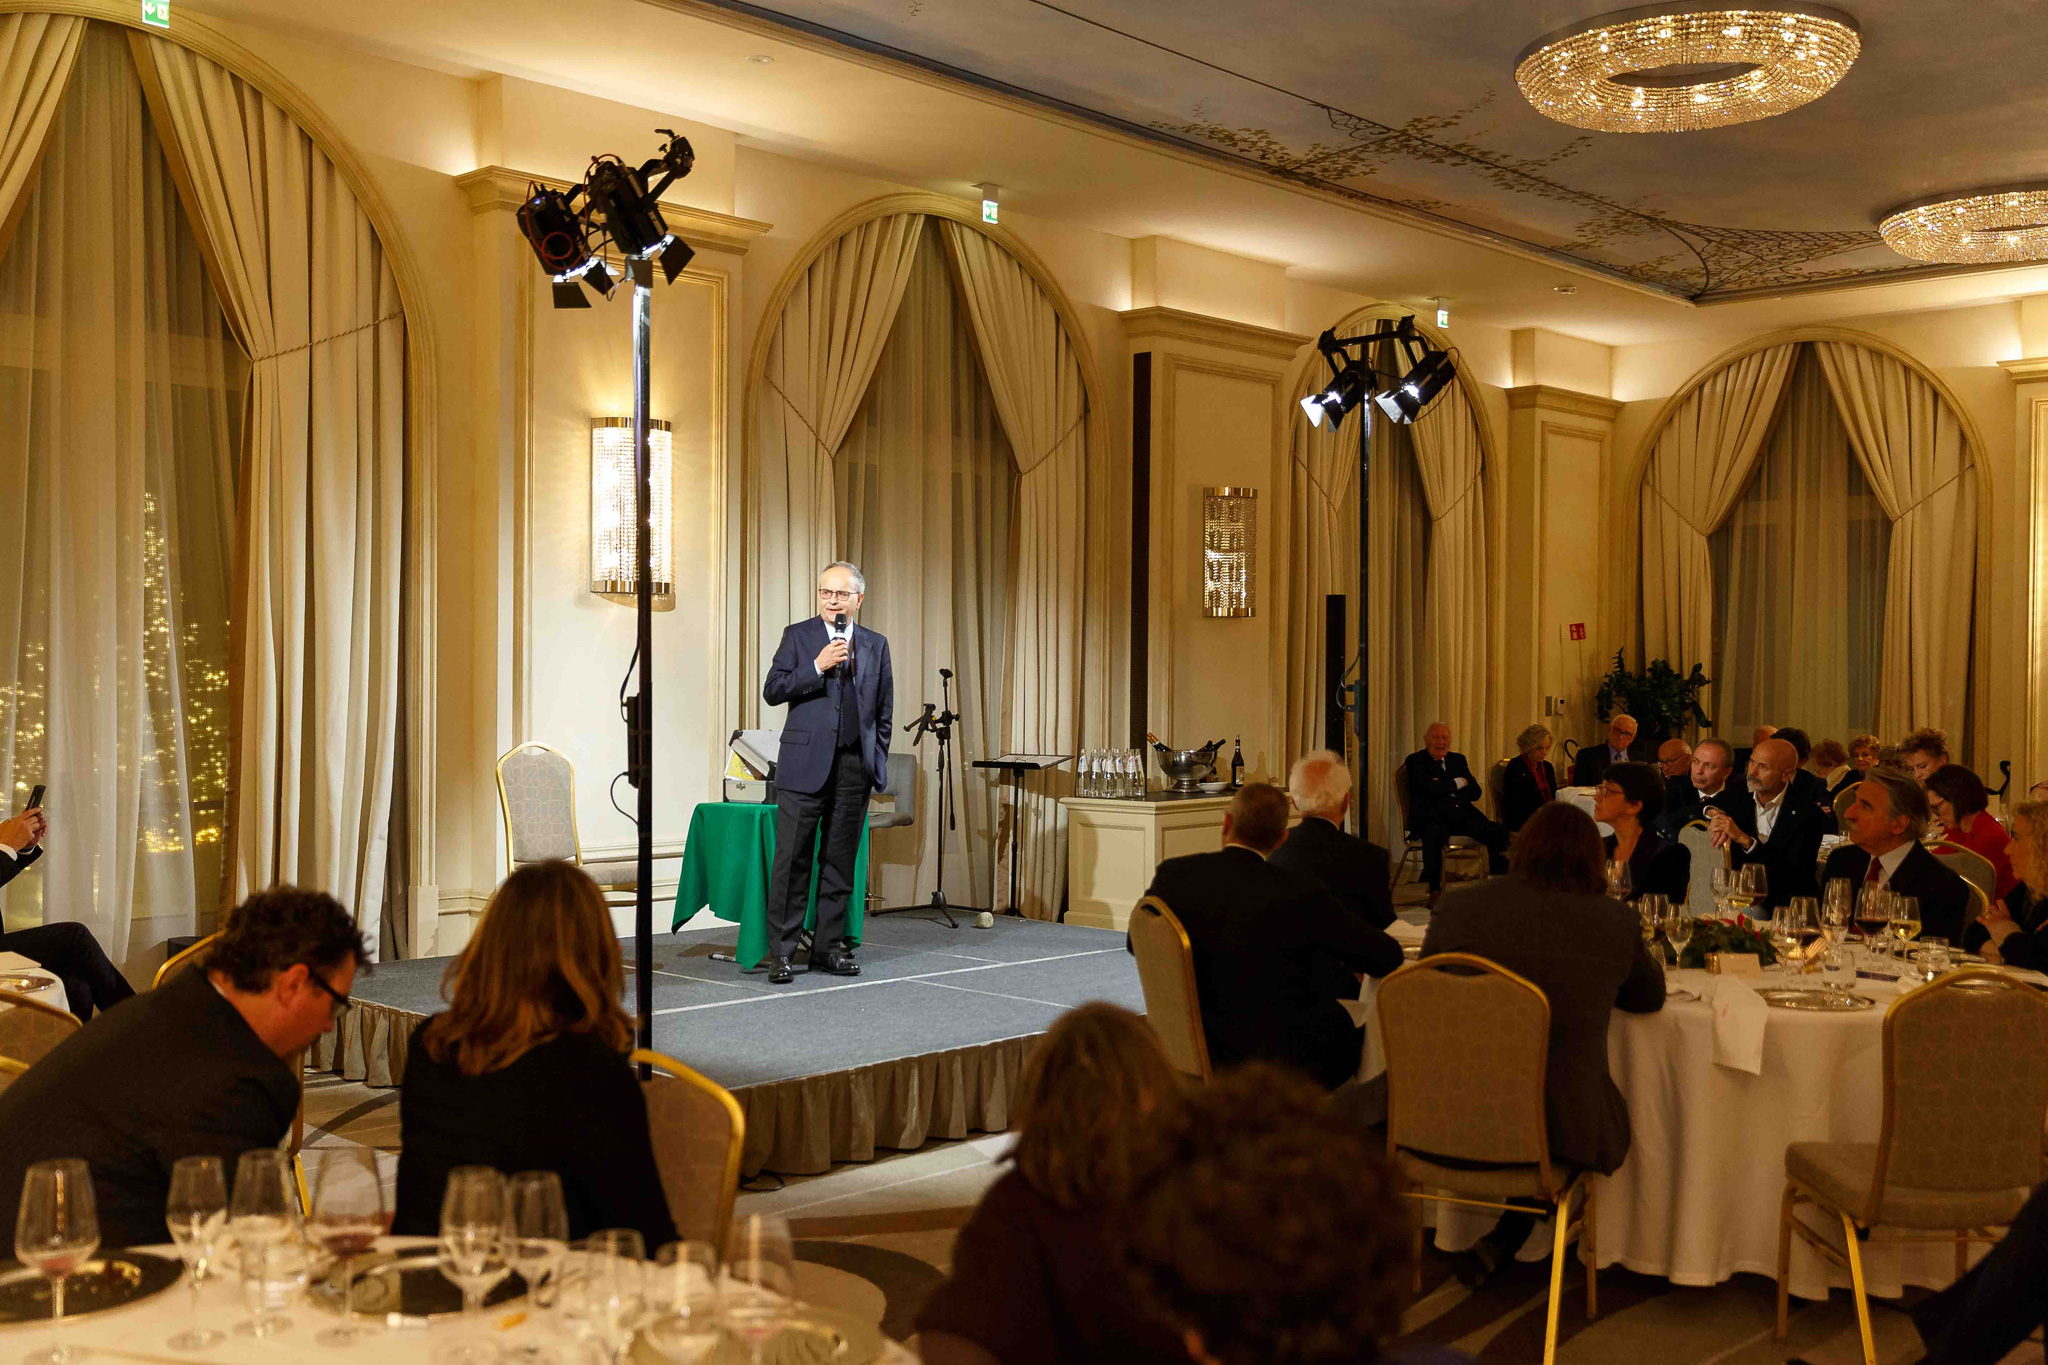 Panoramica della cena durante il discorso del CEO all'hotel principe di savoia